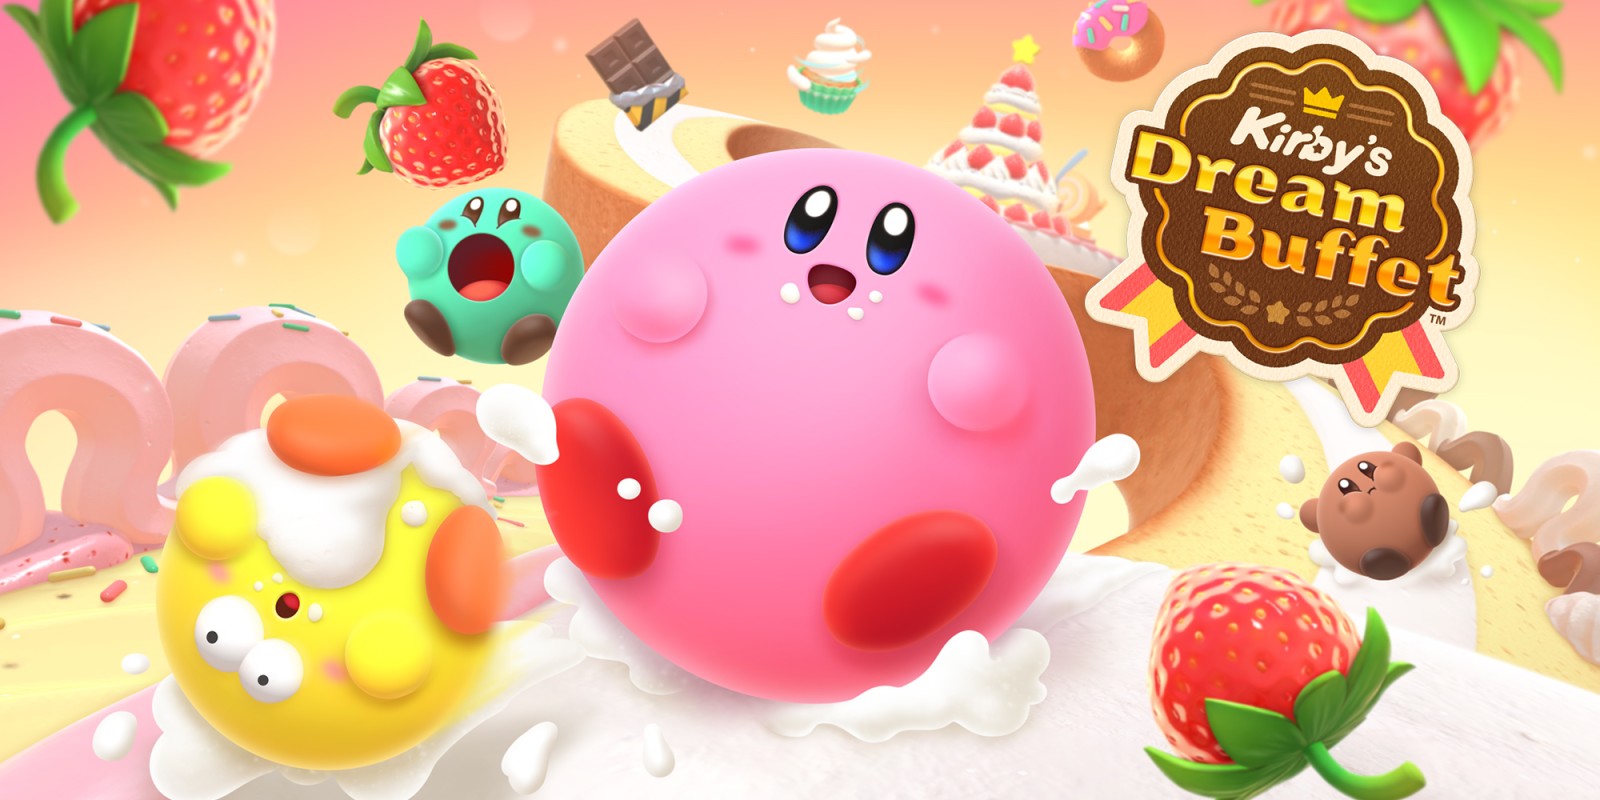 Anuncio de Kirby's Dream Buffet: arcade competitivo sobre comer golosinas